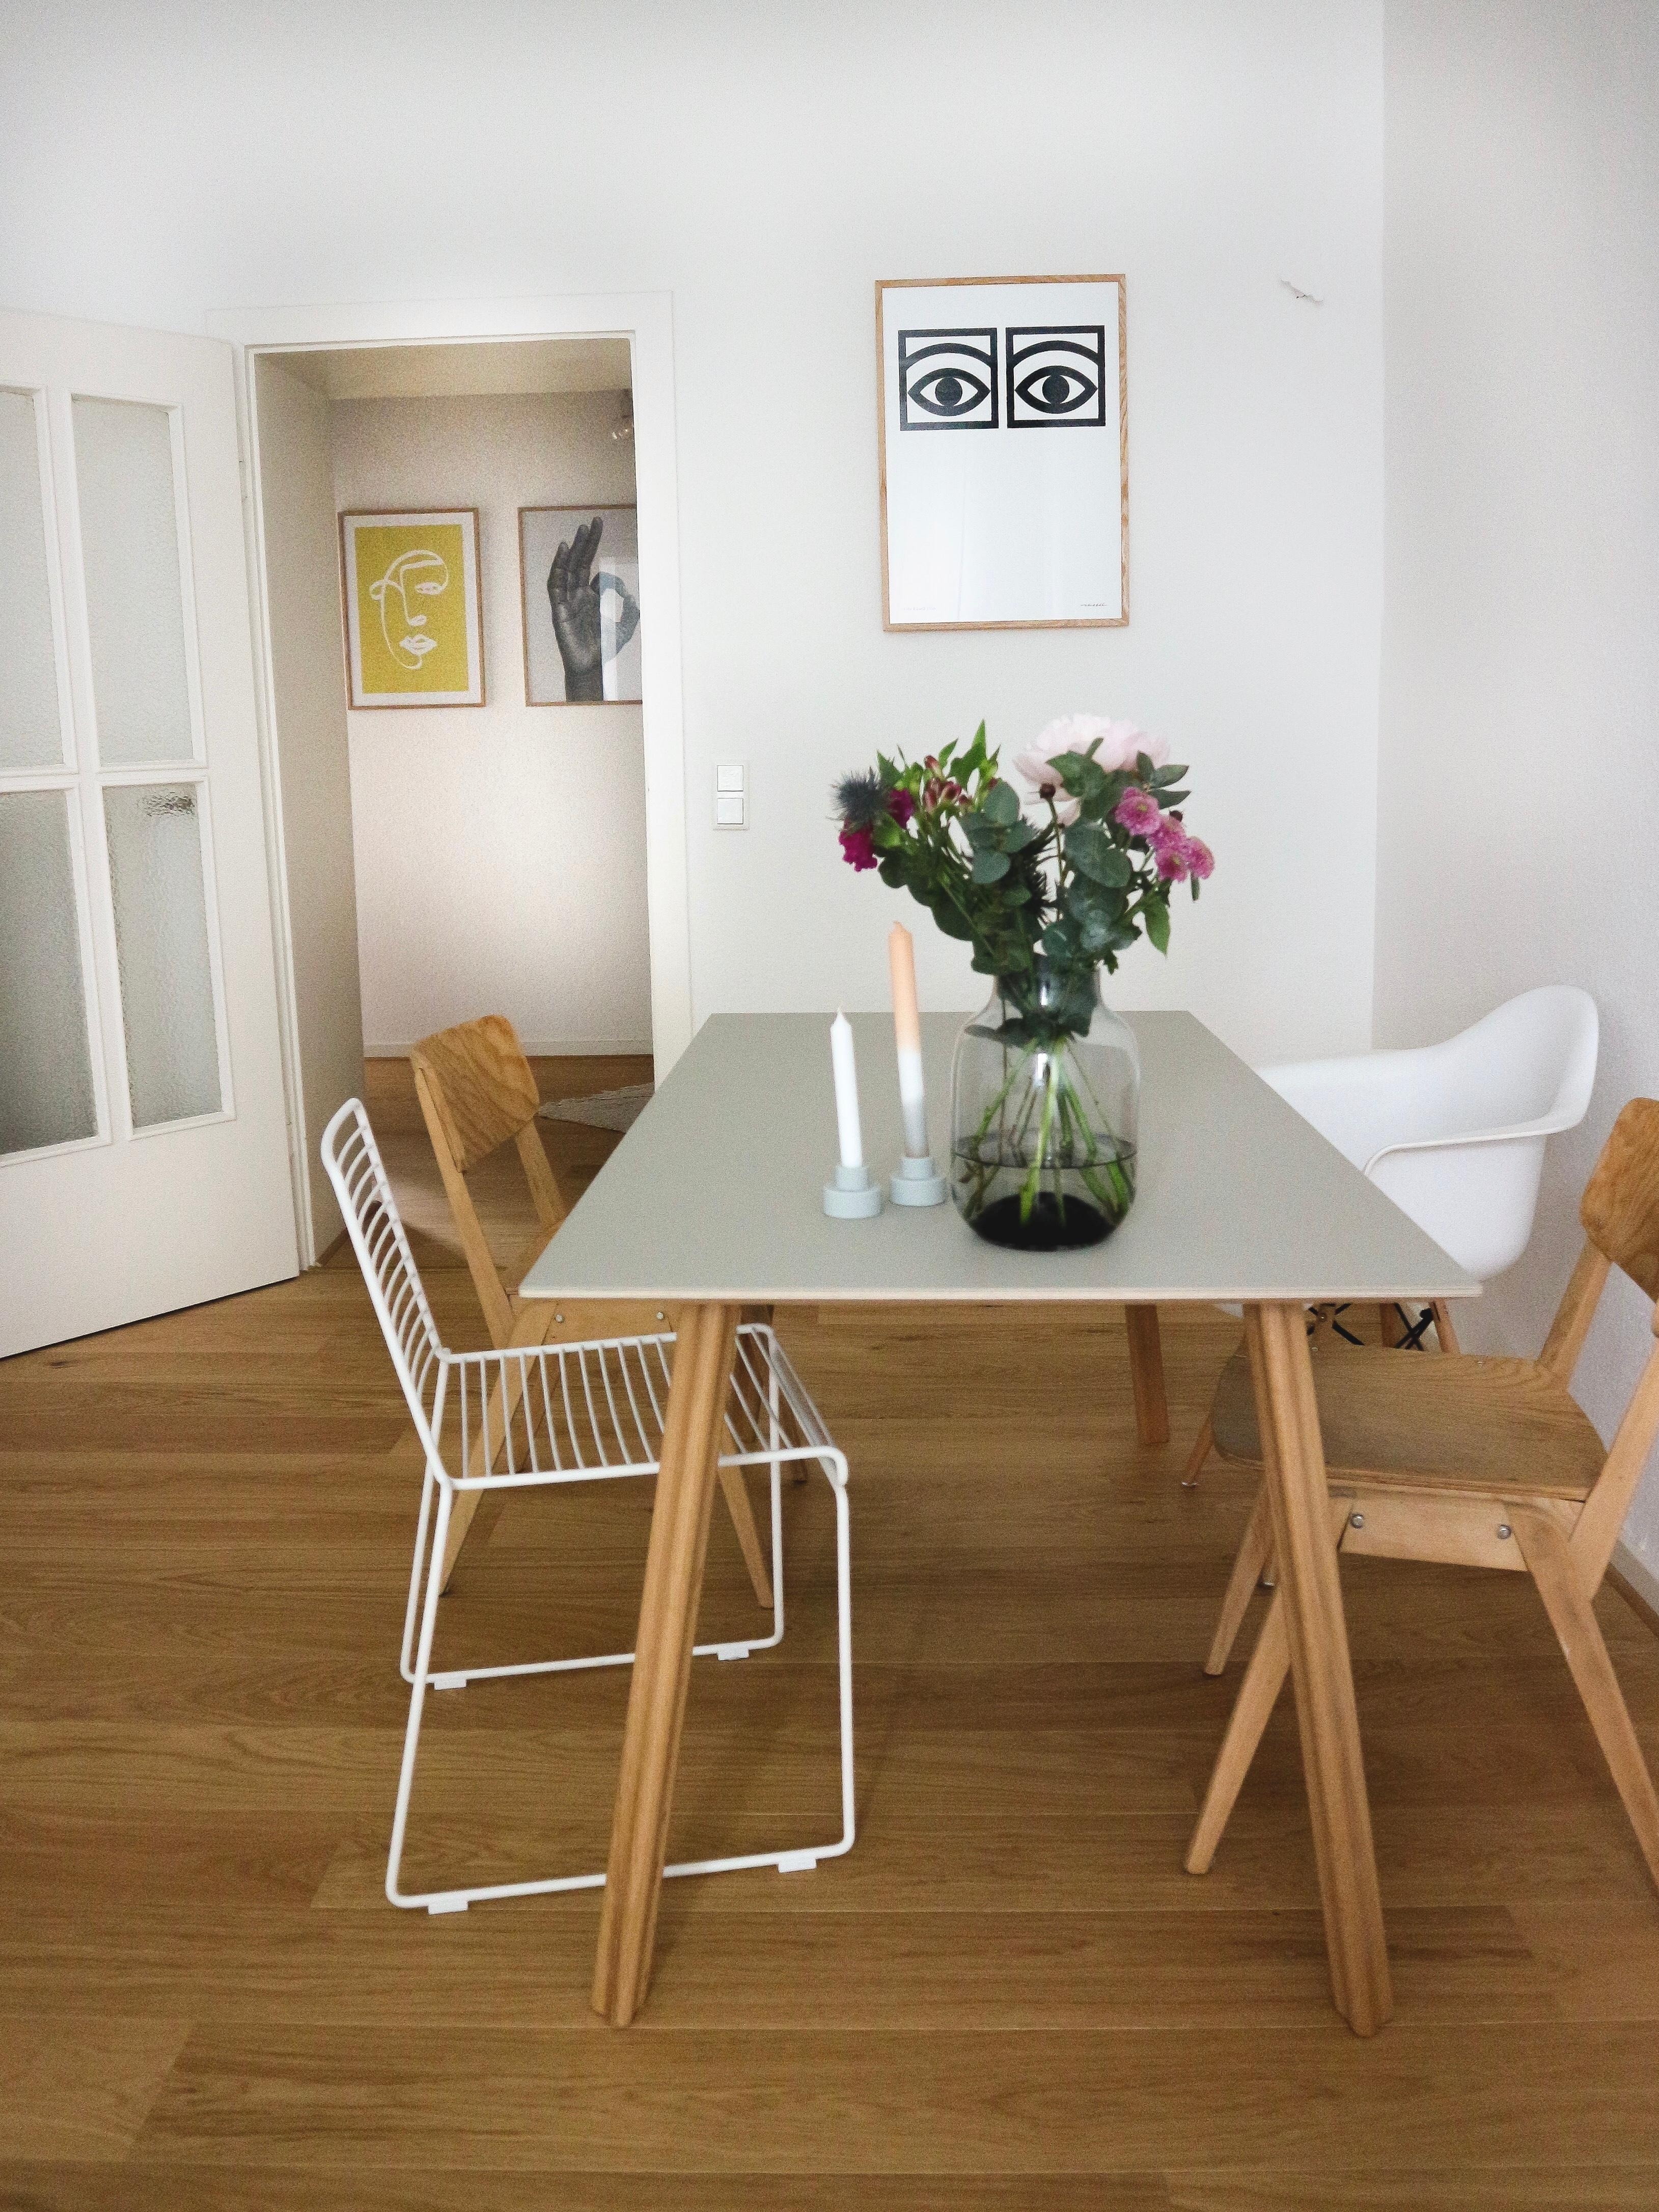 Ich liebe unsere neuen Esstisch #esszimmer #faustlinoleum #haydesign #wohnzimmer #dekoration #interior